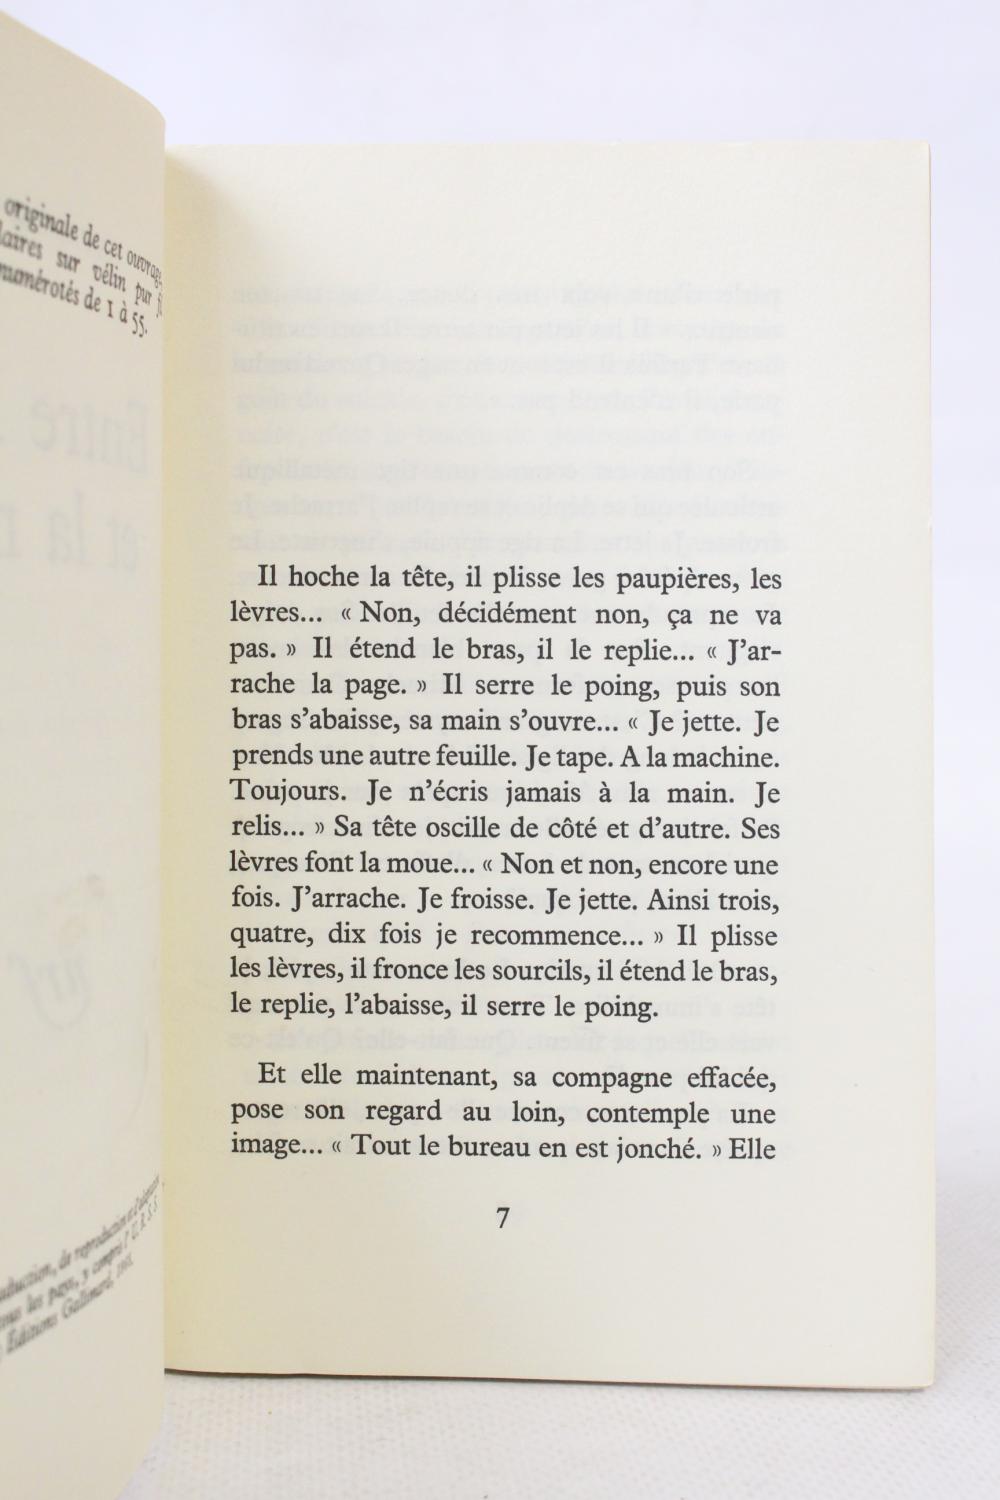 Entre la vie et la mort by SARRAUTE Nathalie: couverture souple (1968 ...